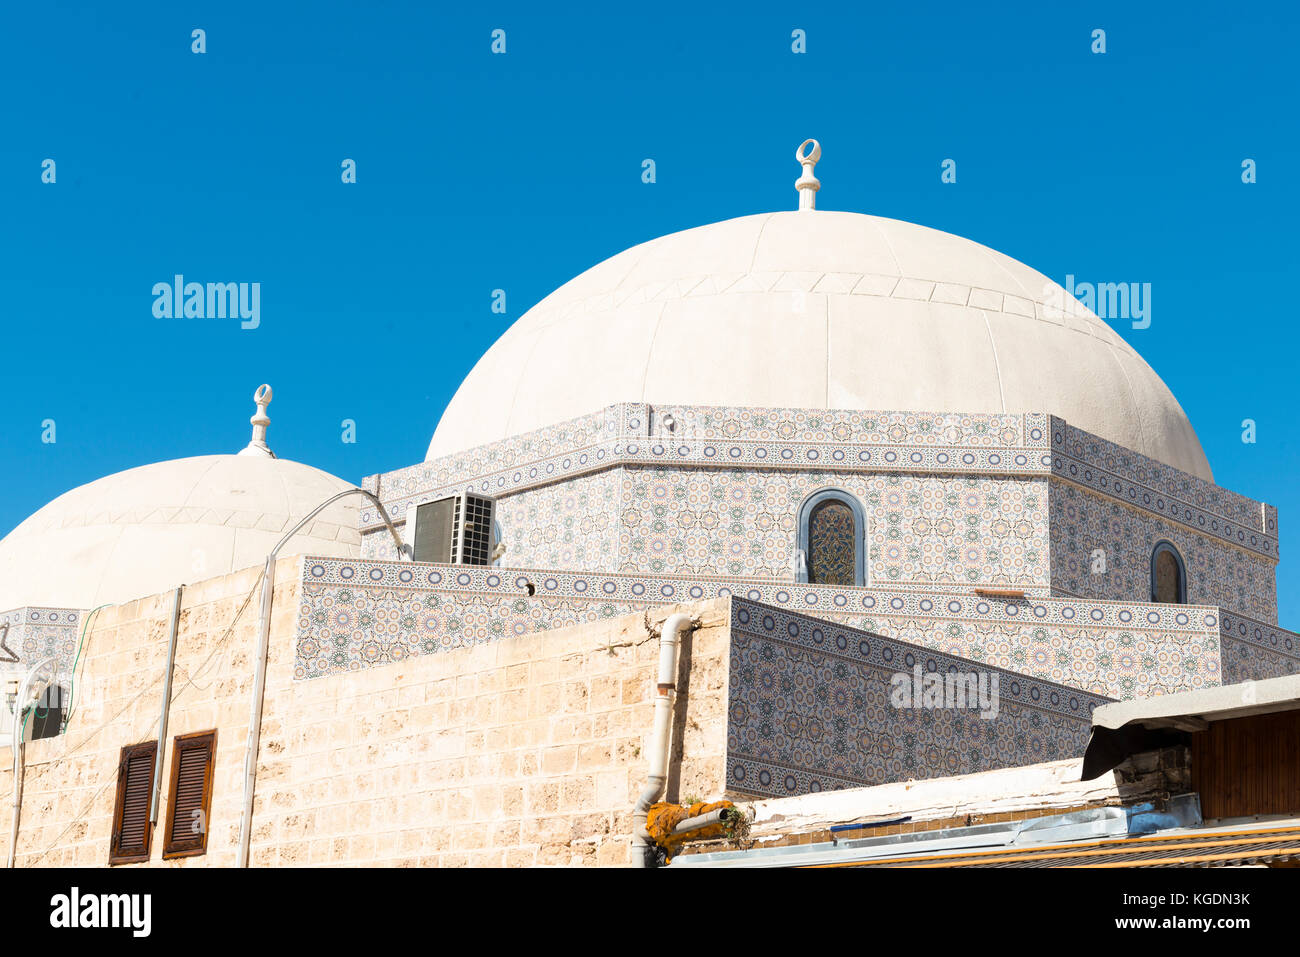 Israele Terra Santa Tel Aviv Jaffa Yofa la moschea Mahmoudiya costruito 1812 comunità musulmana centro la religione del luogo di culto del tetto a cupola di dettaglio Foto Stock